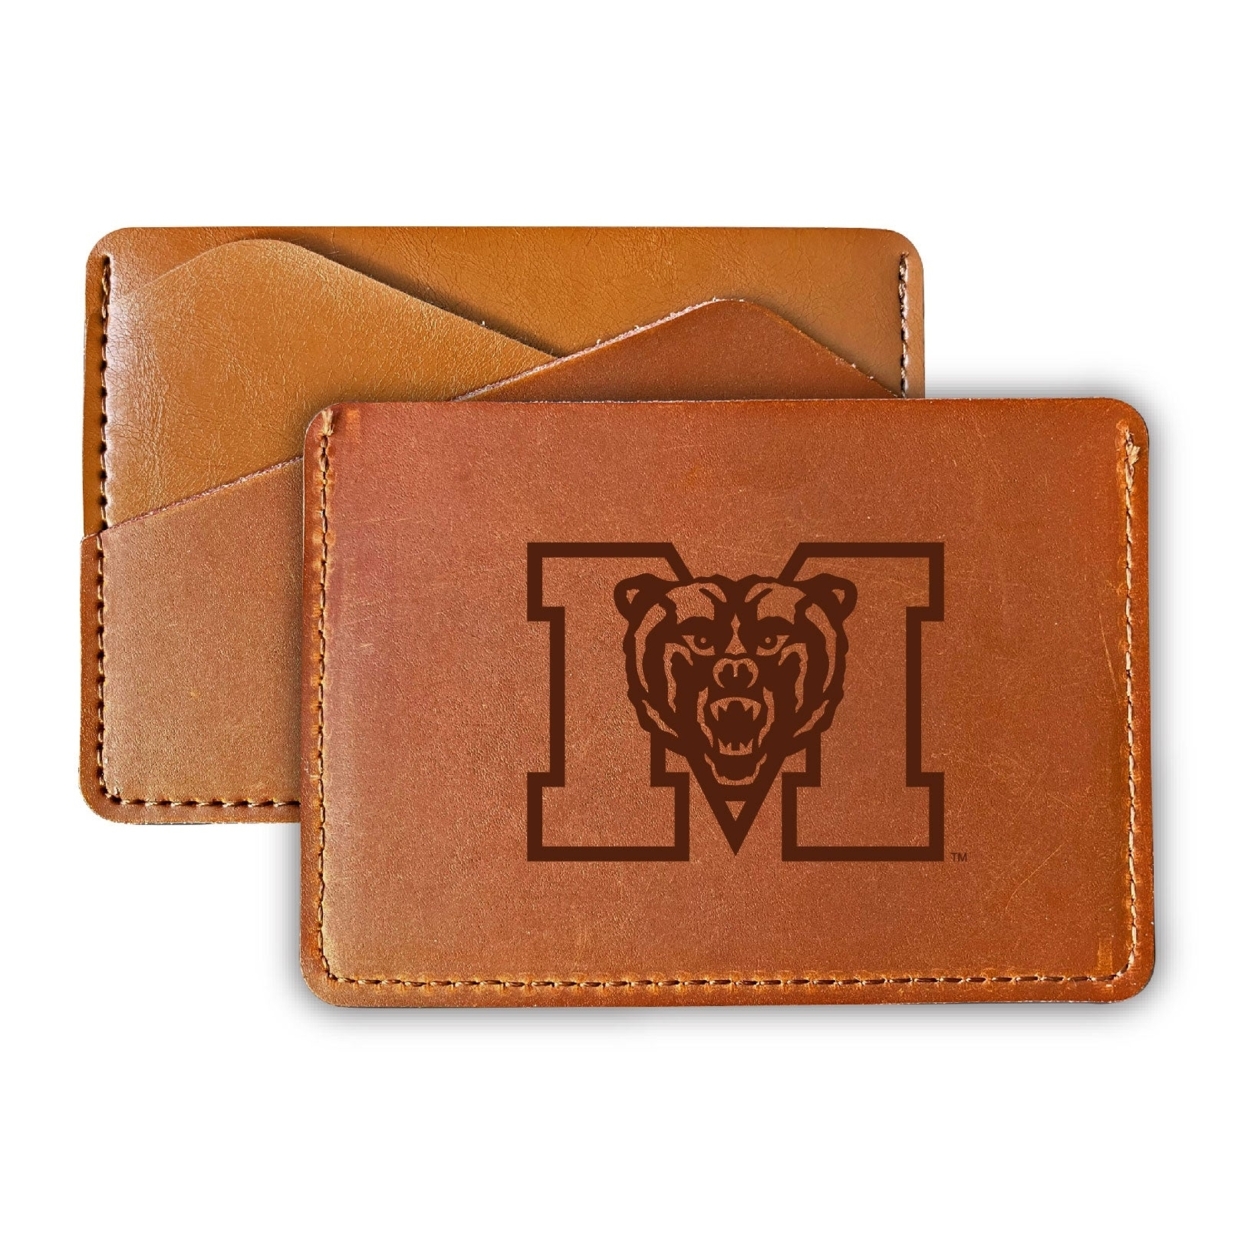 Mercer University College Leather Card Holder Wallet